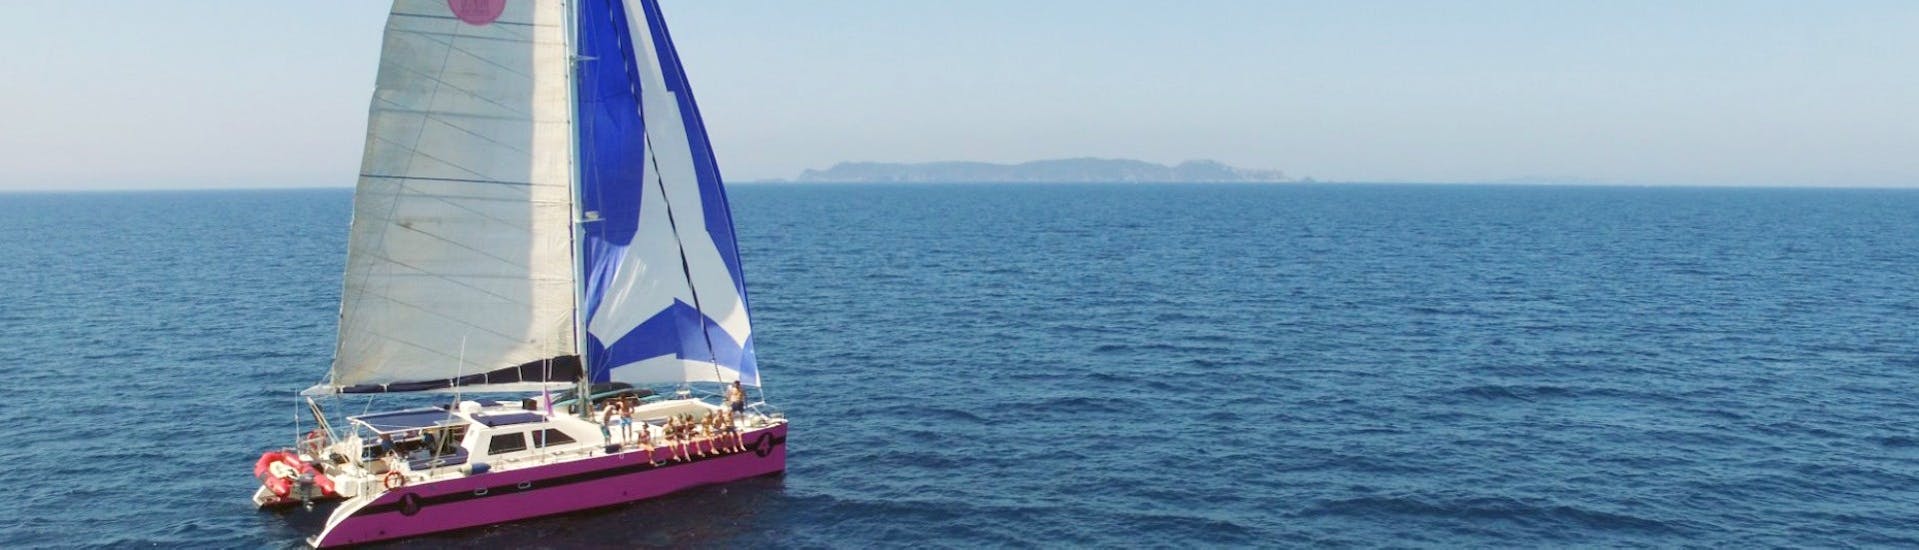 Une famille lors de la Balade en catamaran dans le golfe du Morbihan et à l'île d’Houat avec Caseneuve Maxi Catamaran.